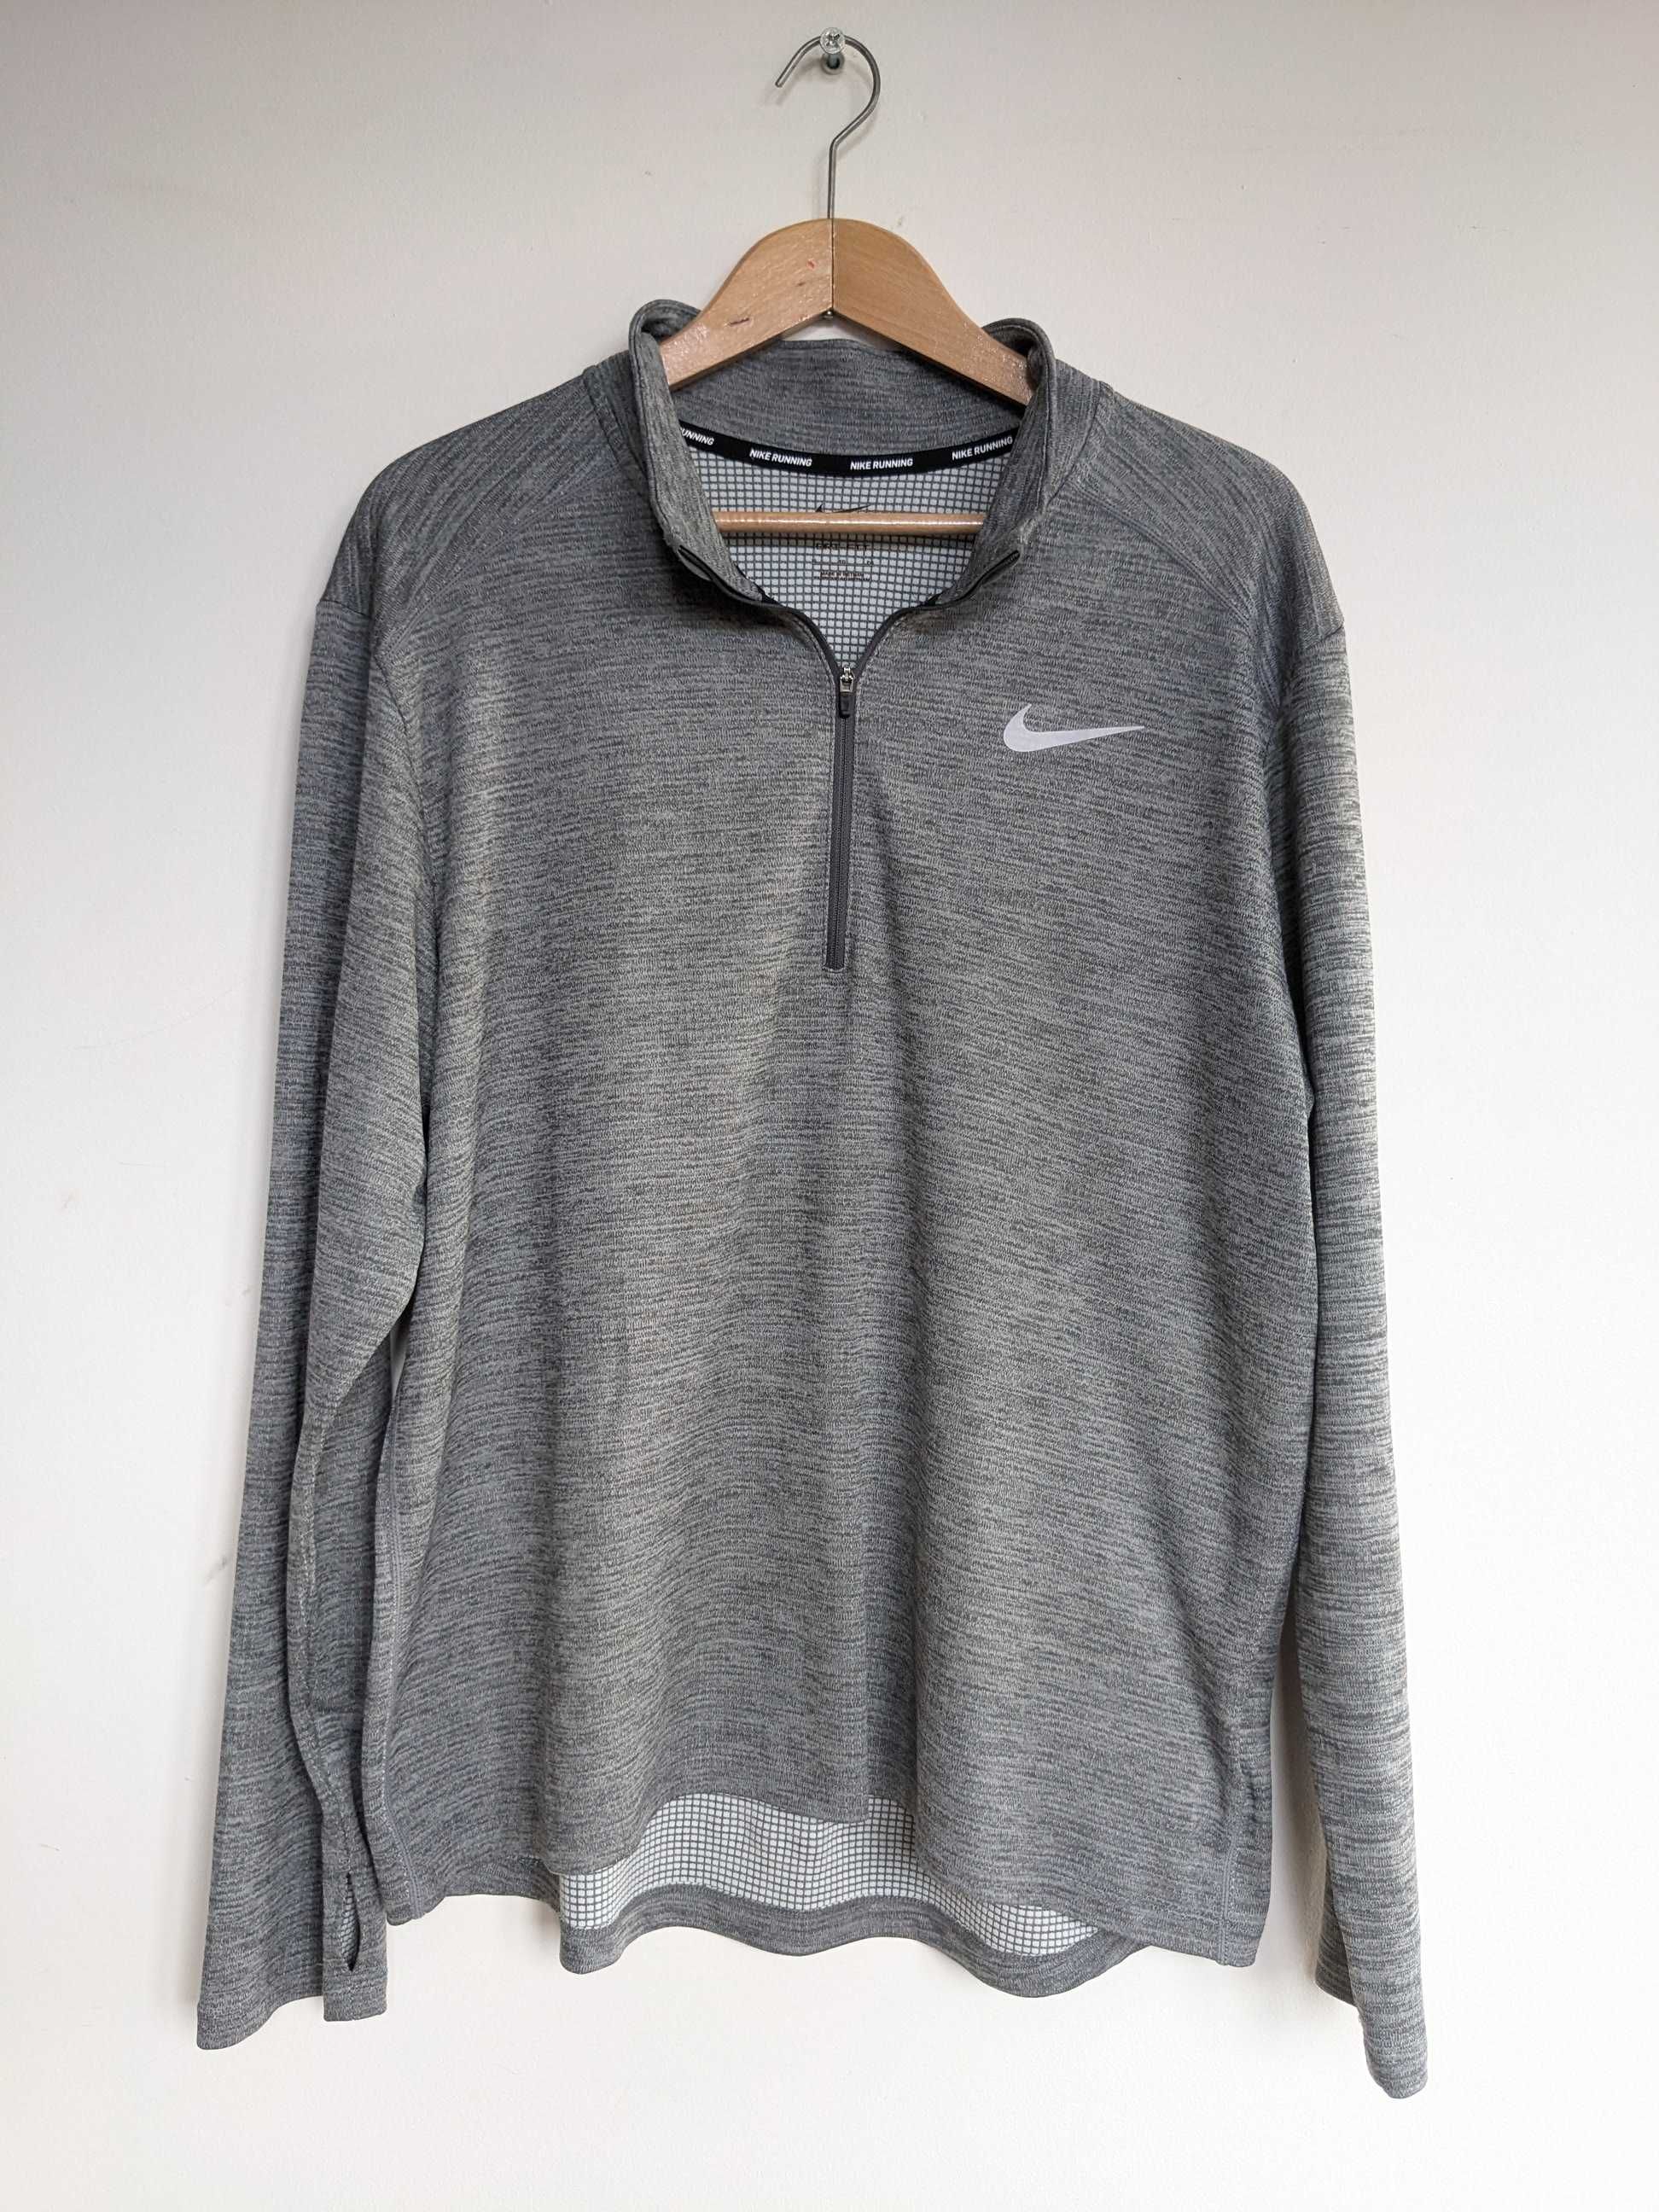 Bluza sportowa Nike Pacer 1/2 Zip, rozmiar XL